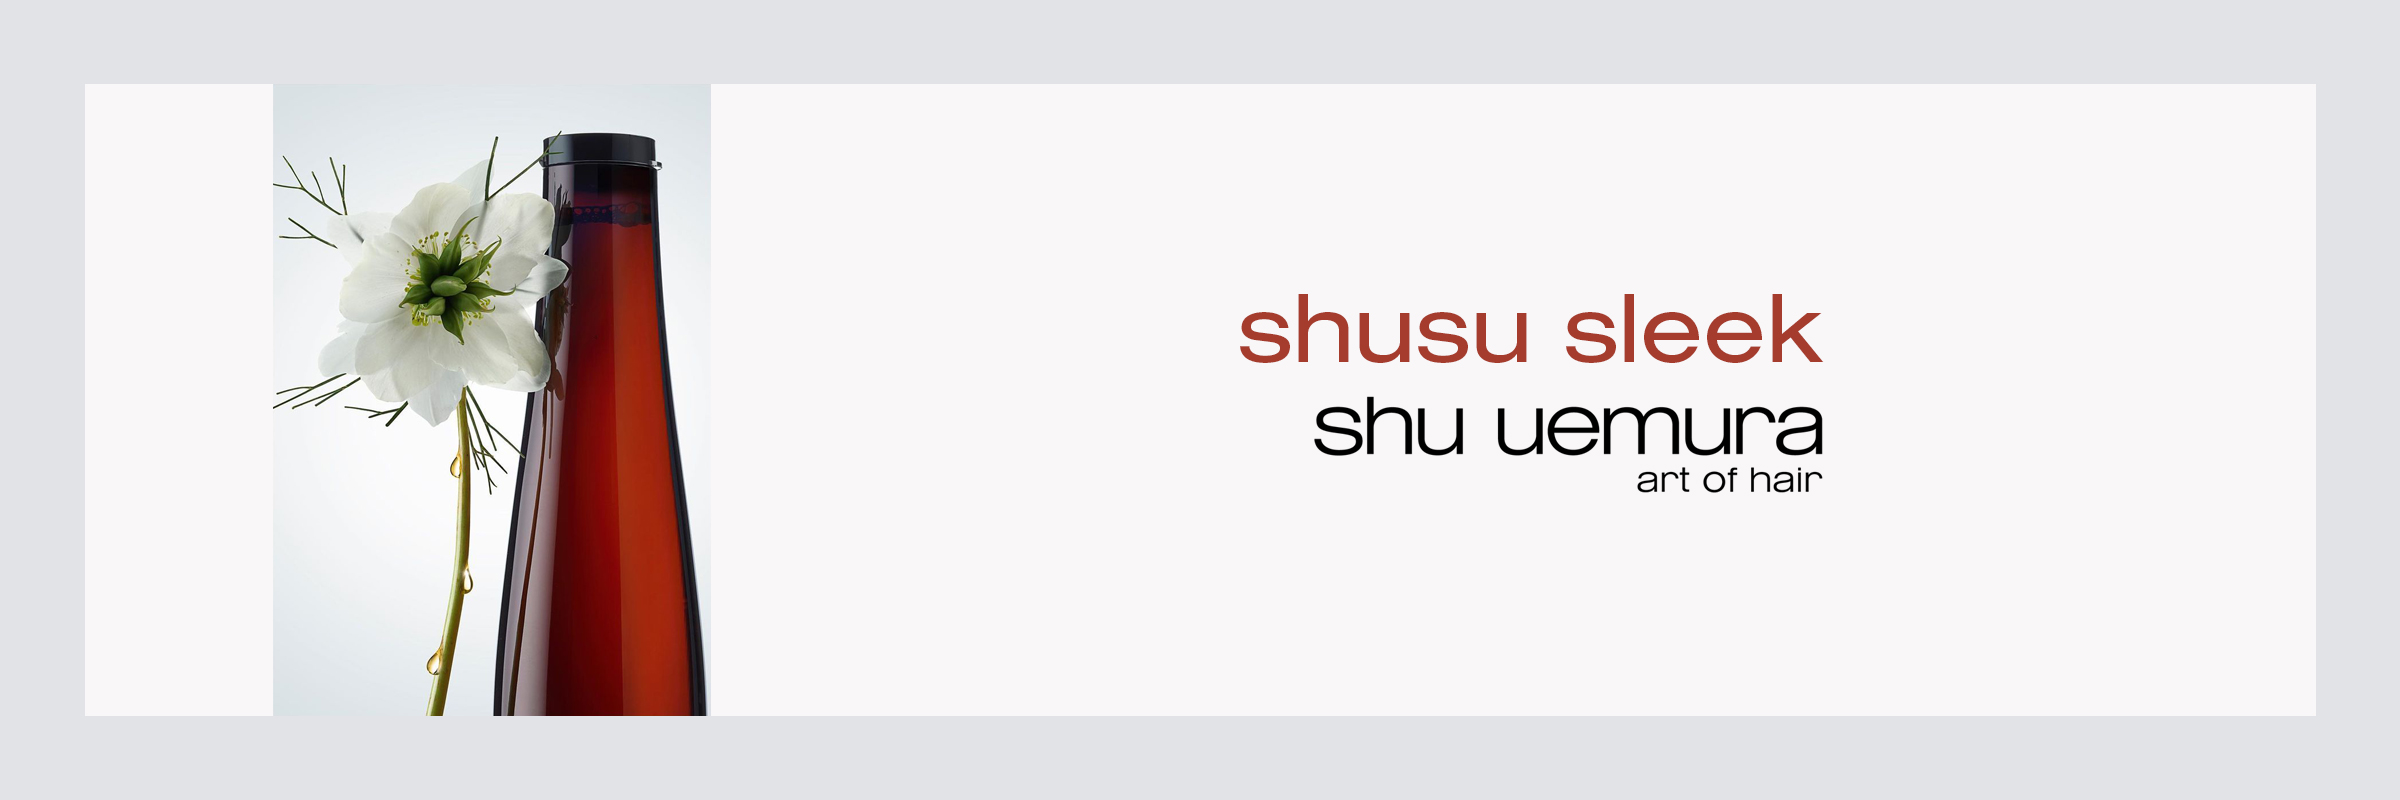 Shu Uemura Shusu Sleek